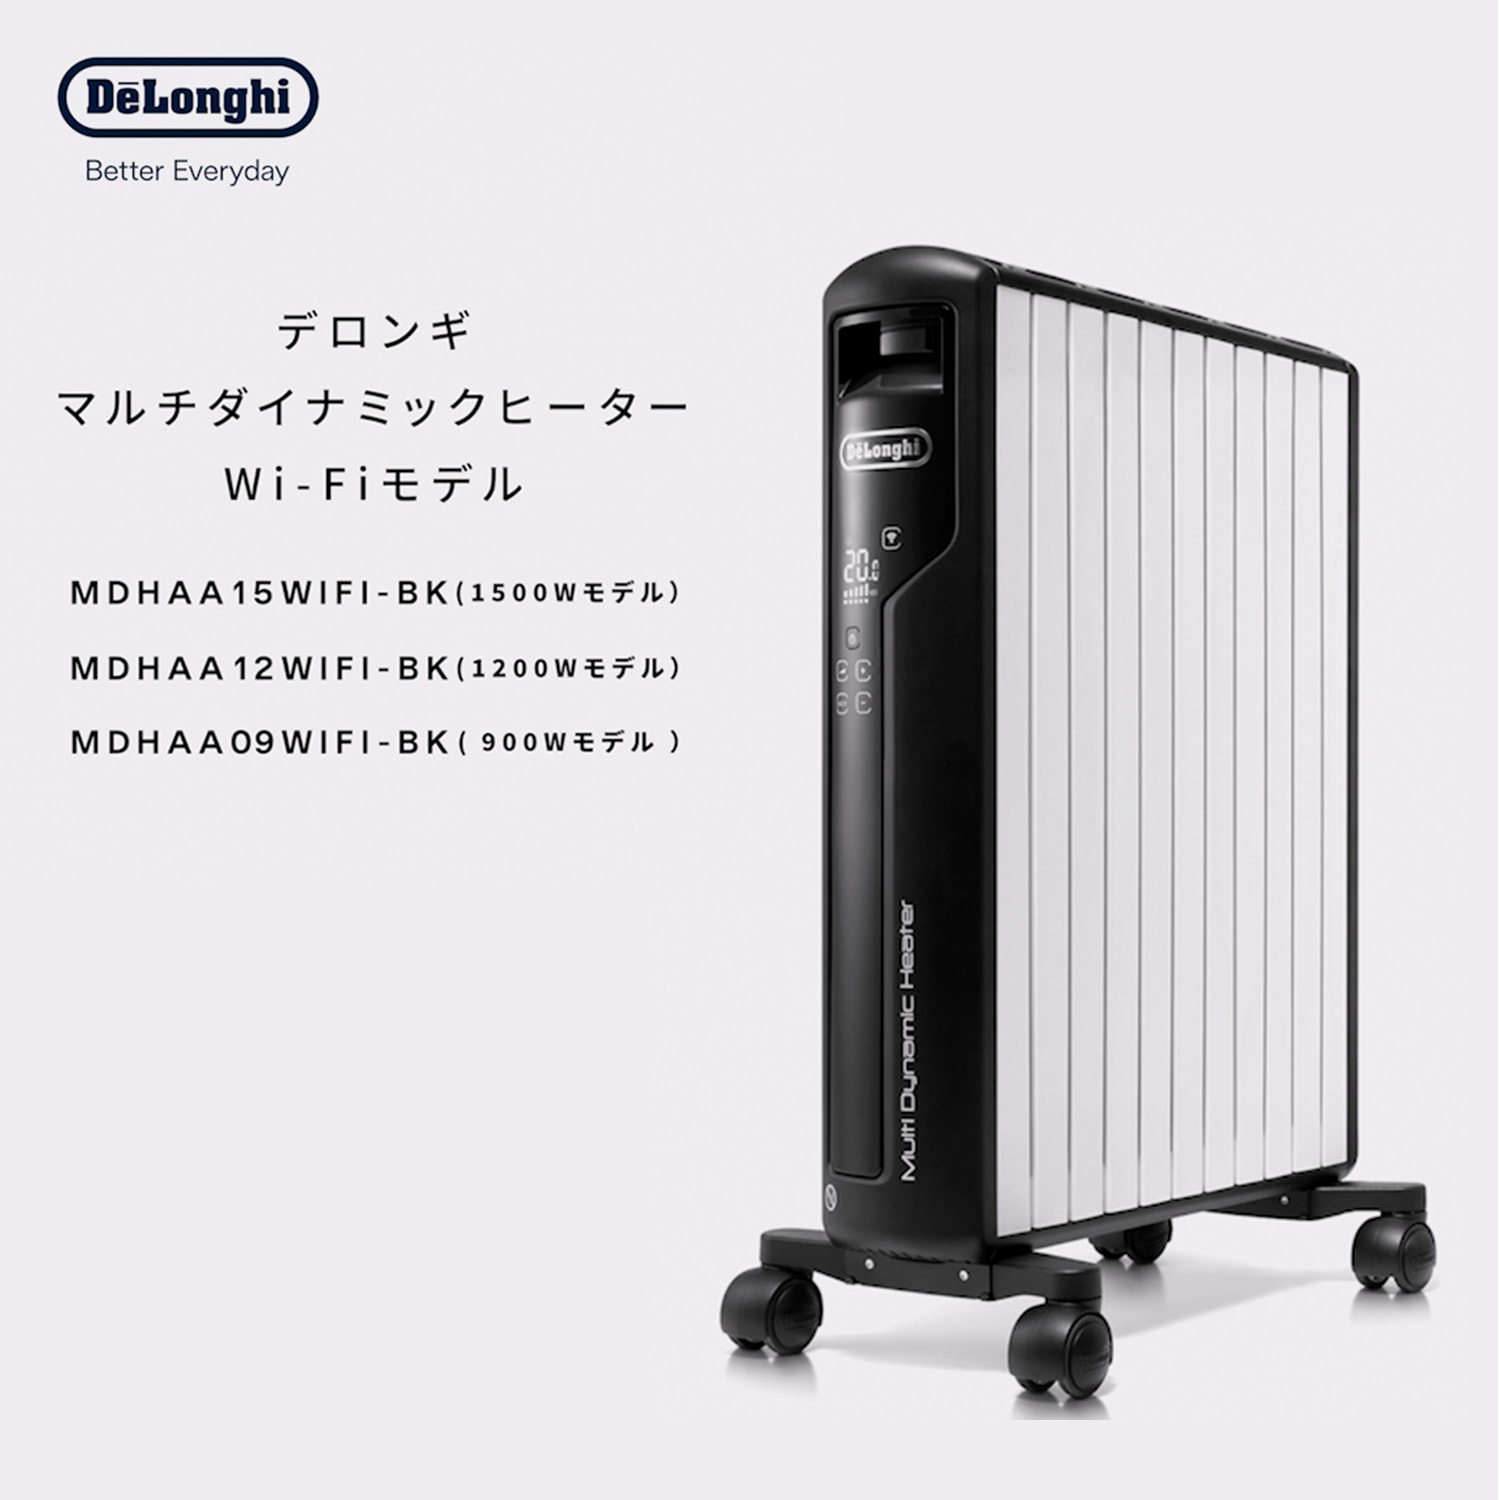 デロンギ マルチダイナミックヒーター Wi-Fiモデル MDHAA12WIFI-BK |ゼロ風暖房 デロンギ